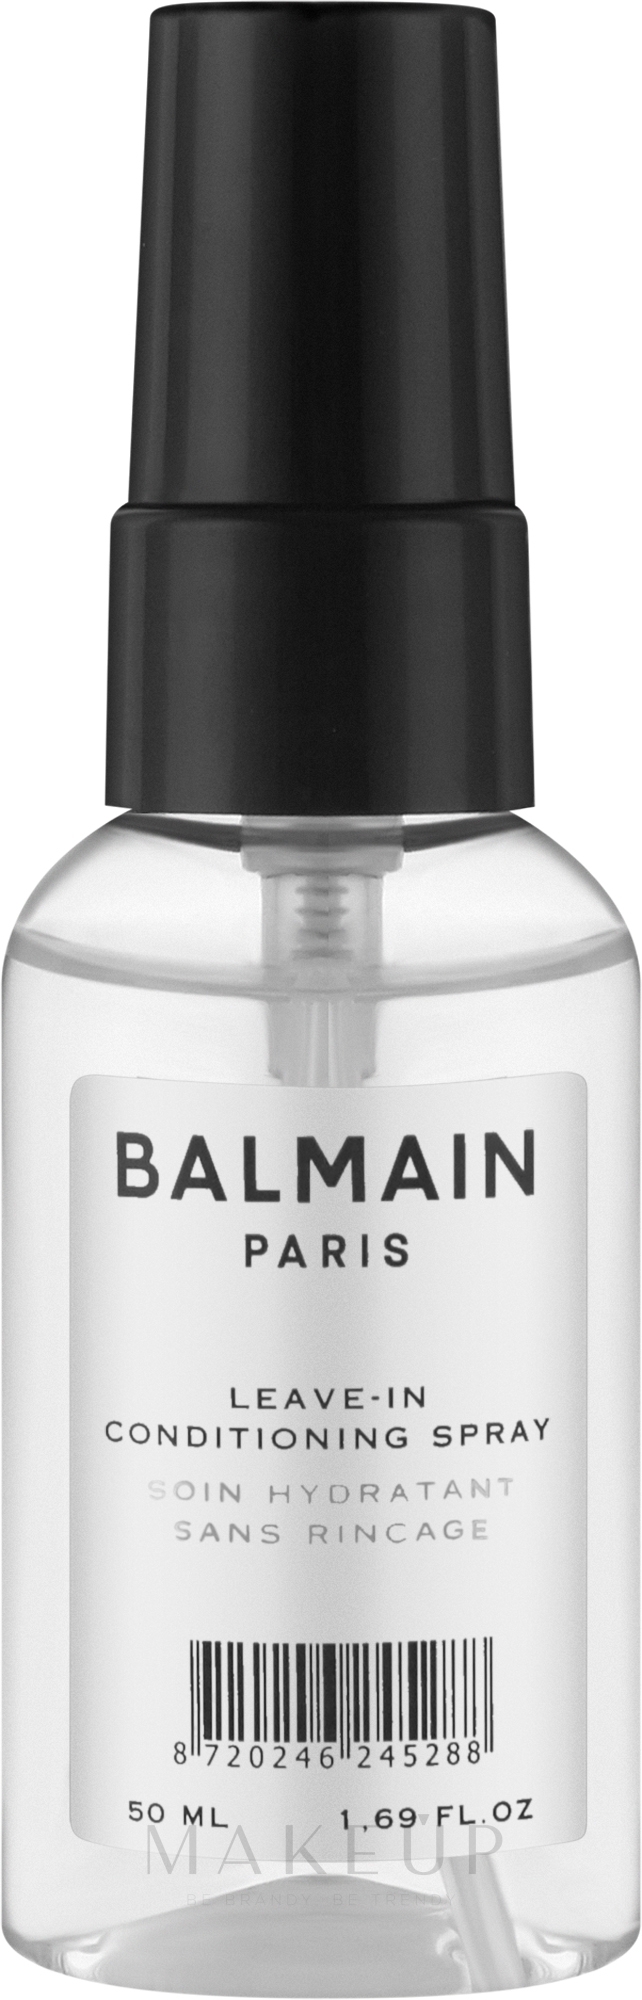 Conditioner-Spray für das Haar ohne Ausspülen - Balmain Paris Hair Couture Leave-In Conditioning Spray — Bild 50 ml